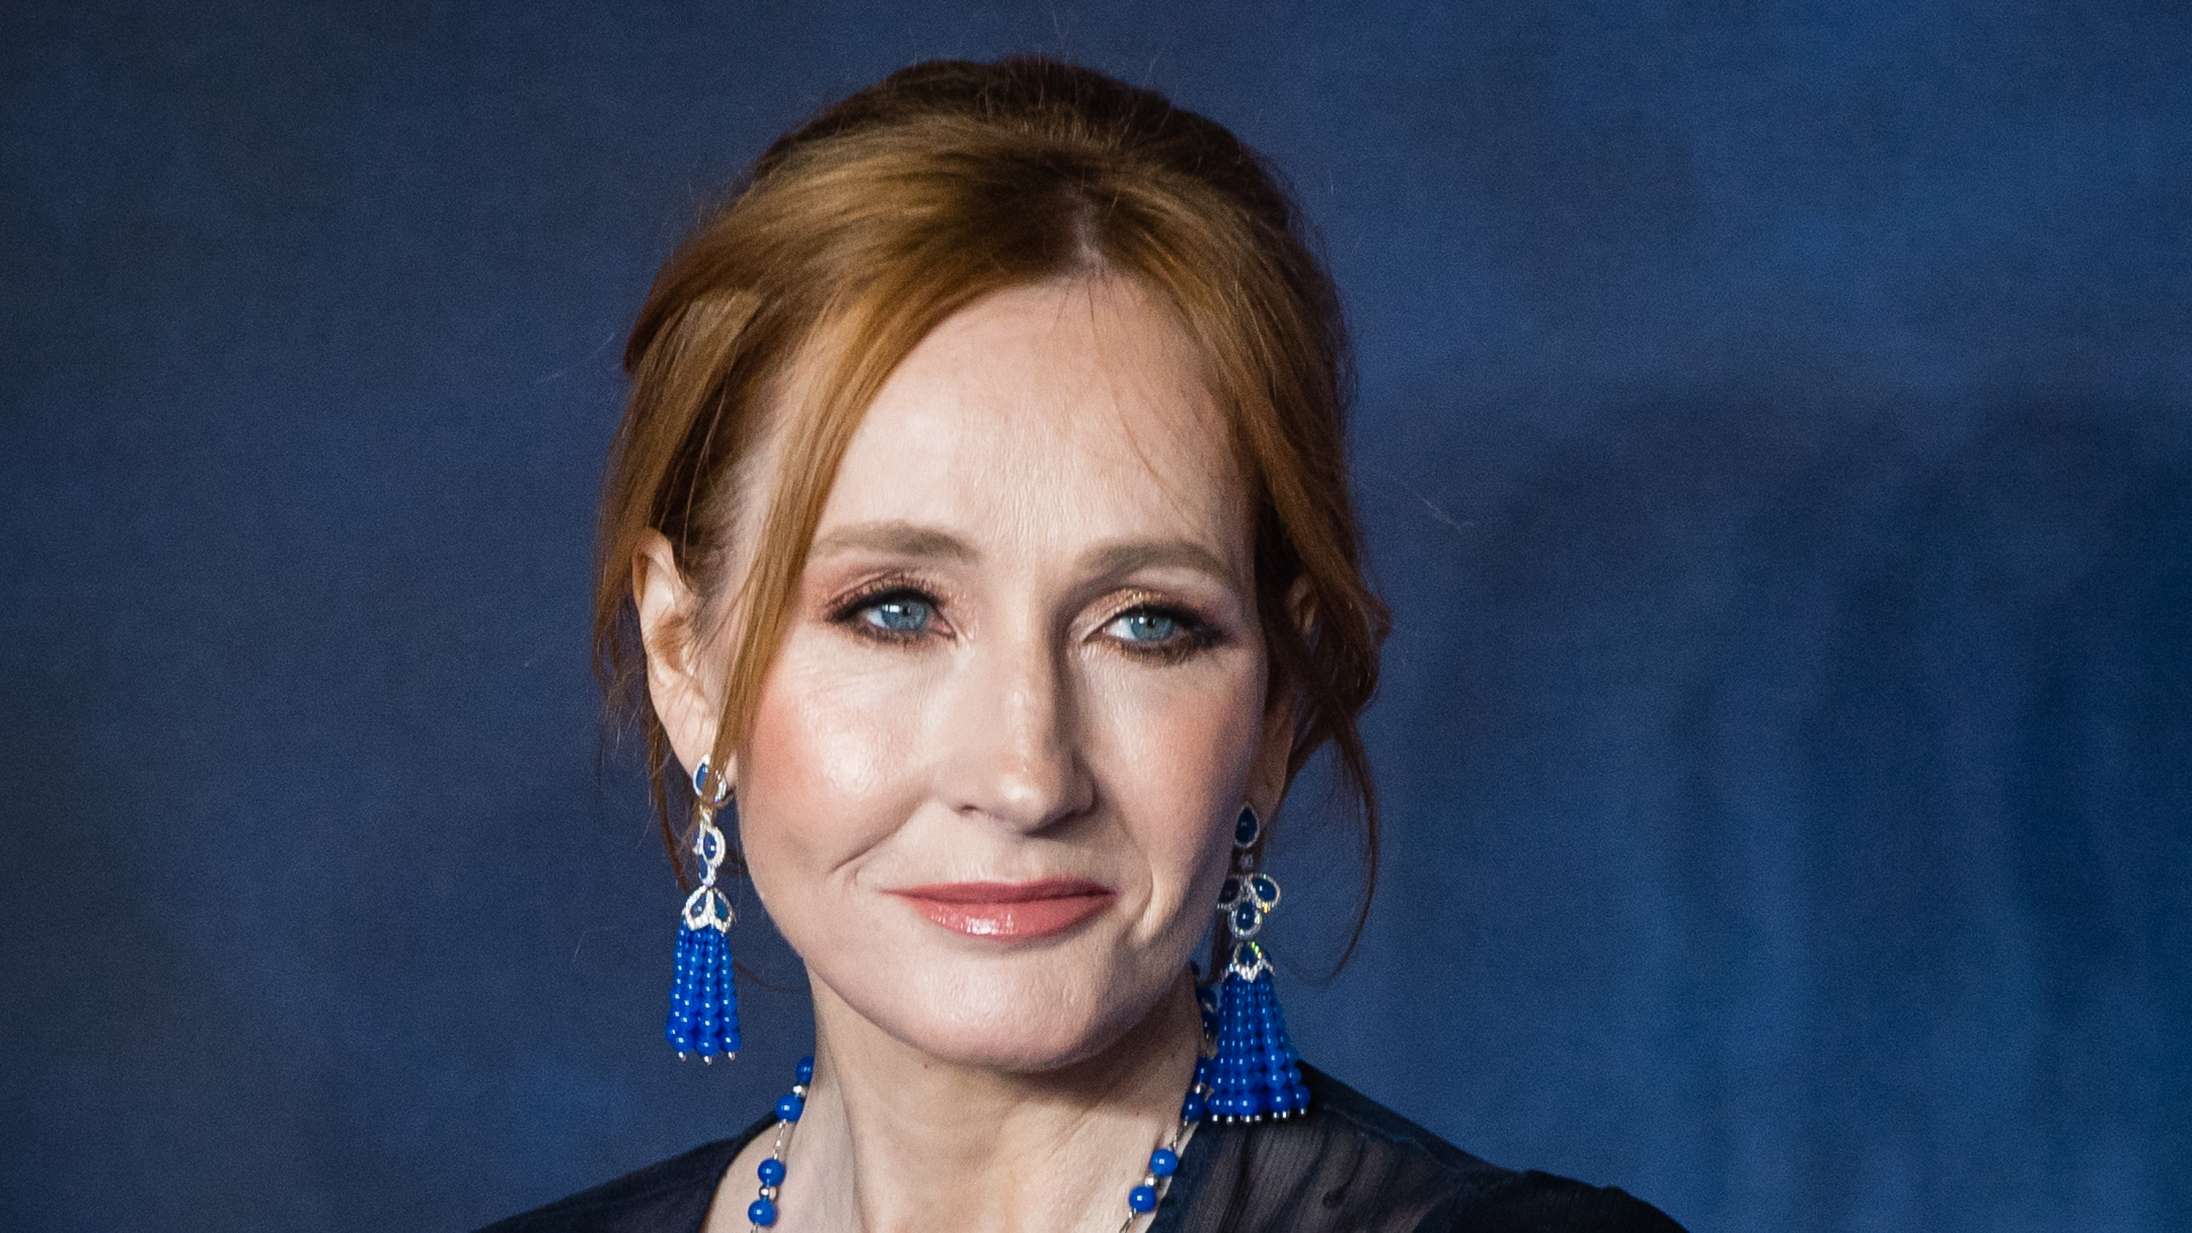 J.K. Rowling kalder stjerneskuespillers transforsvar for »køns-Taliban«